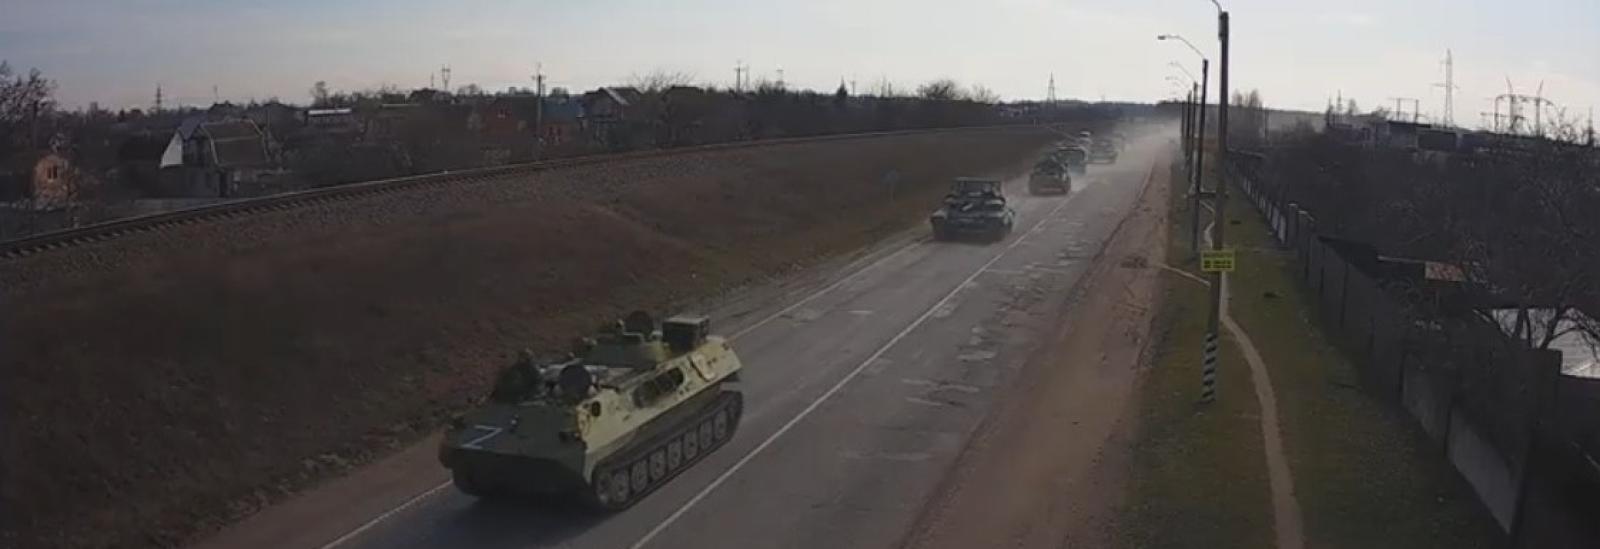 Coluna tanques russos